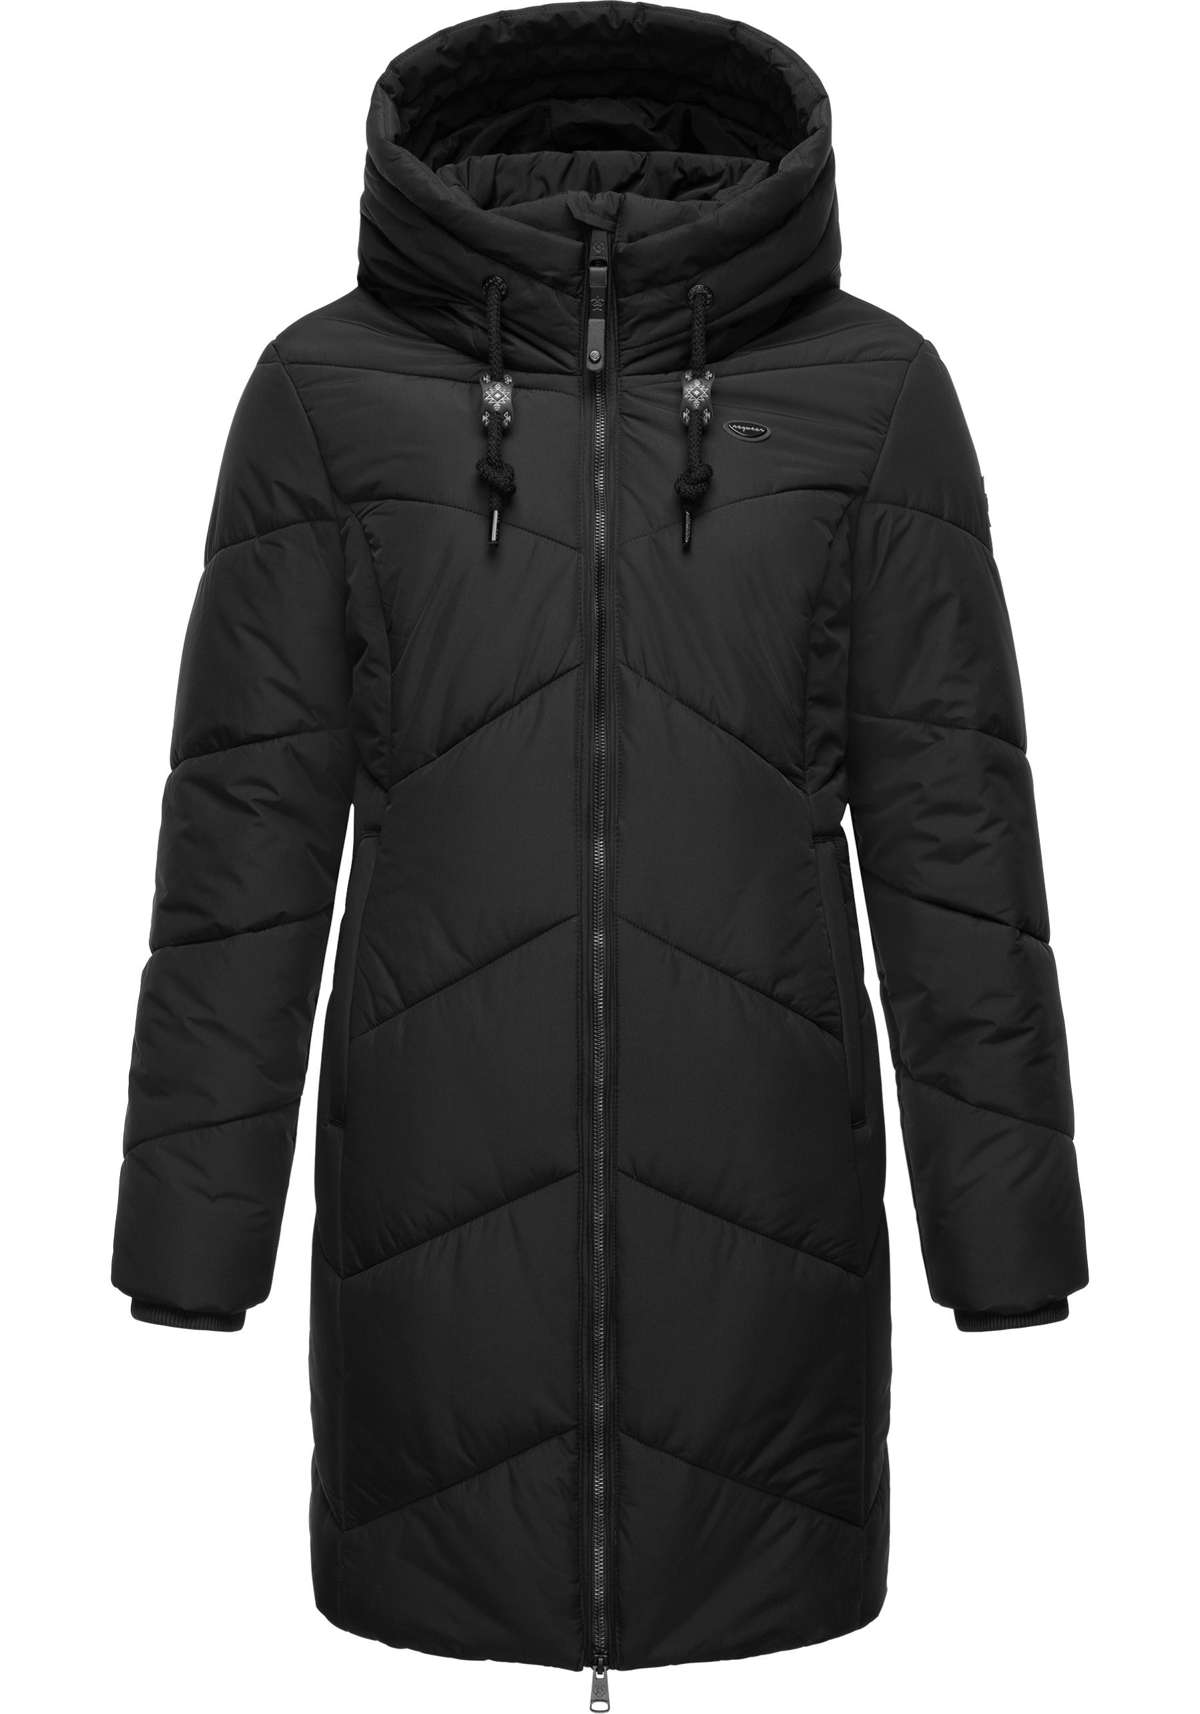 Стеганое пальто, стильное зимнее пальто с зигзагообразным узором и большим капюшоном.